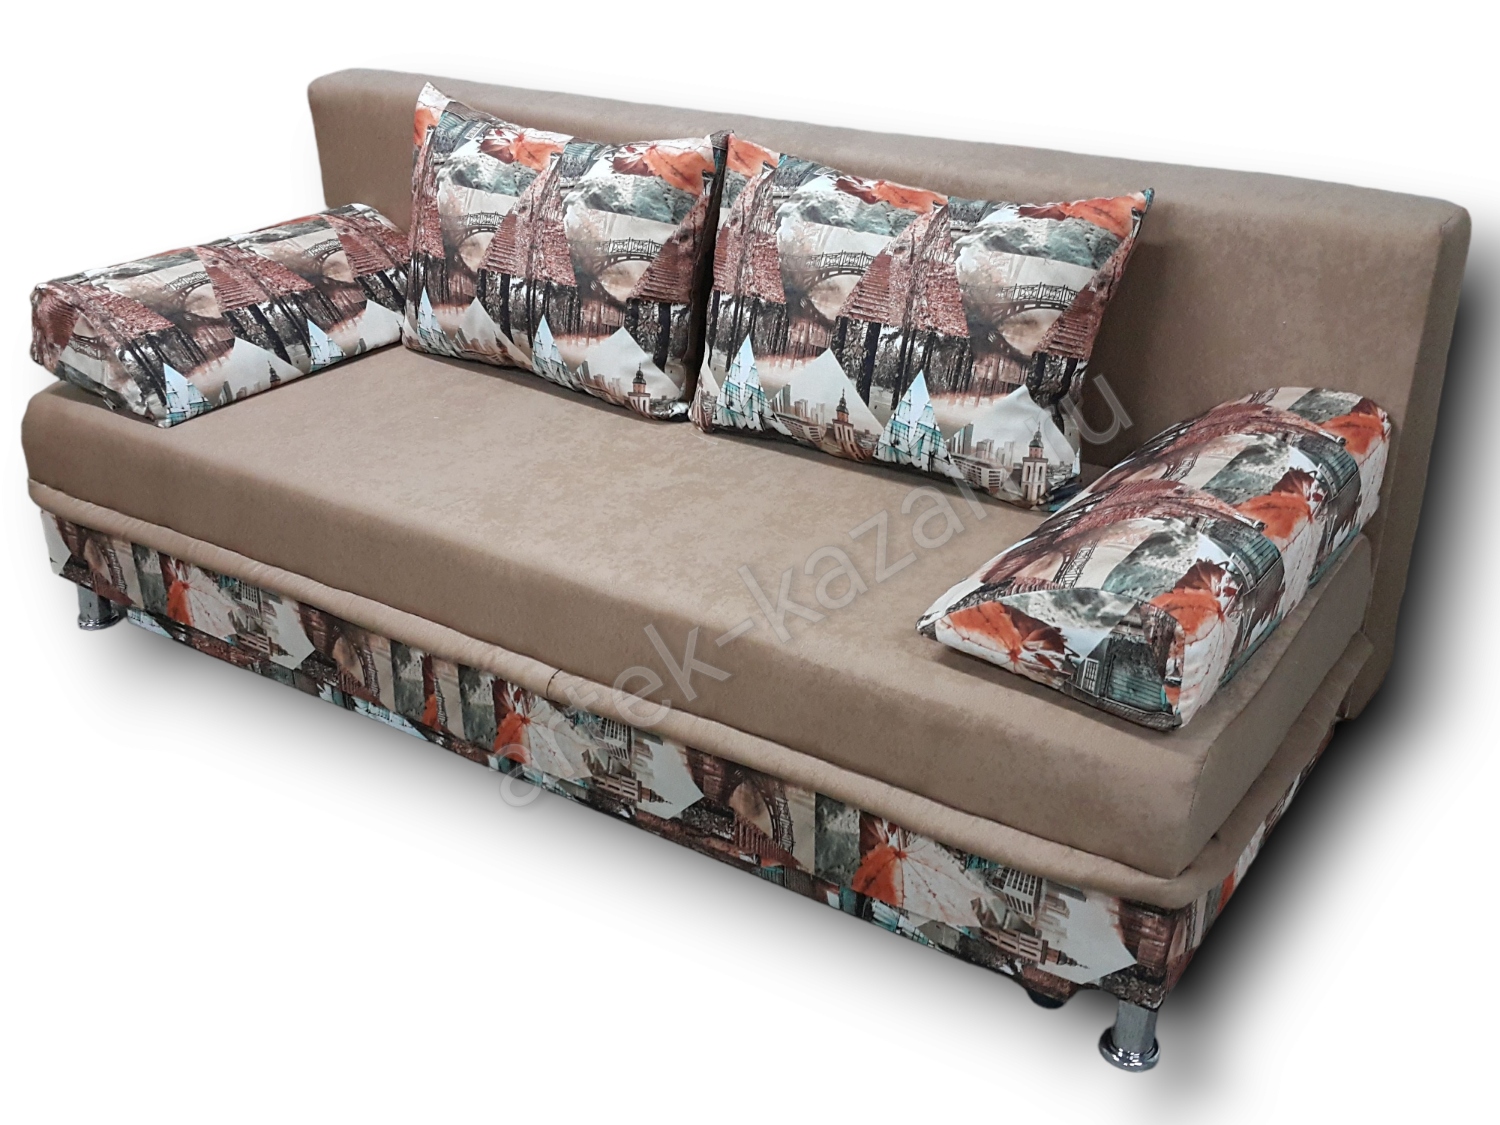 диван еврокнижка Эконом фото № 54. Купить недорогой диван по низкой цене от производителя можно у нас.